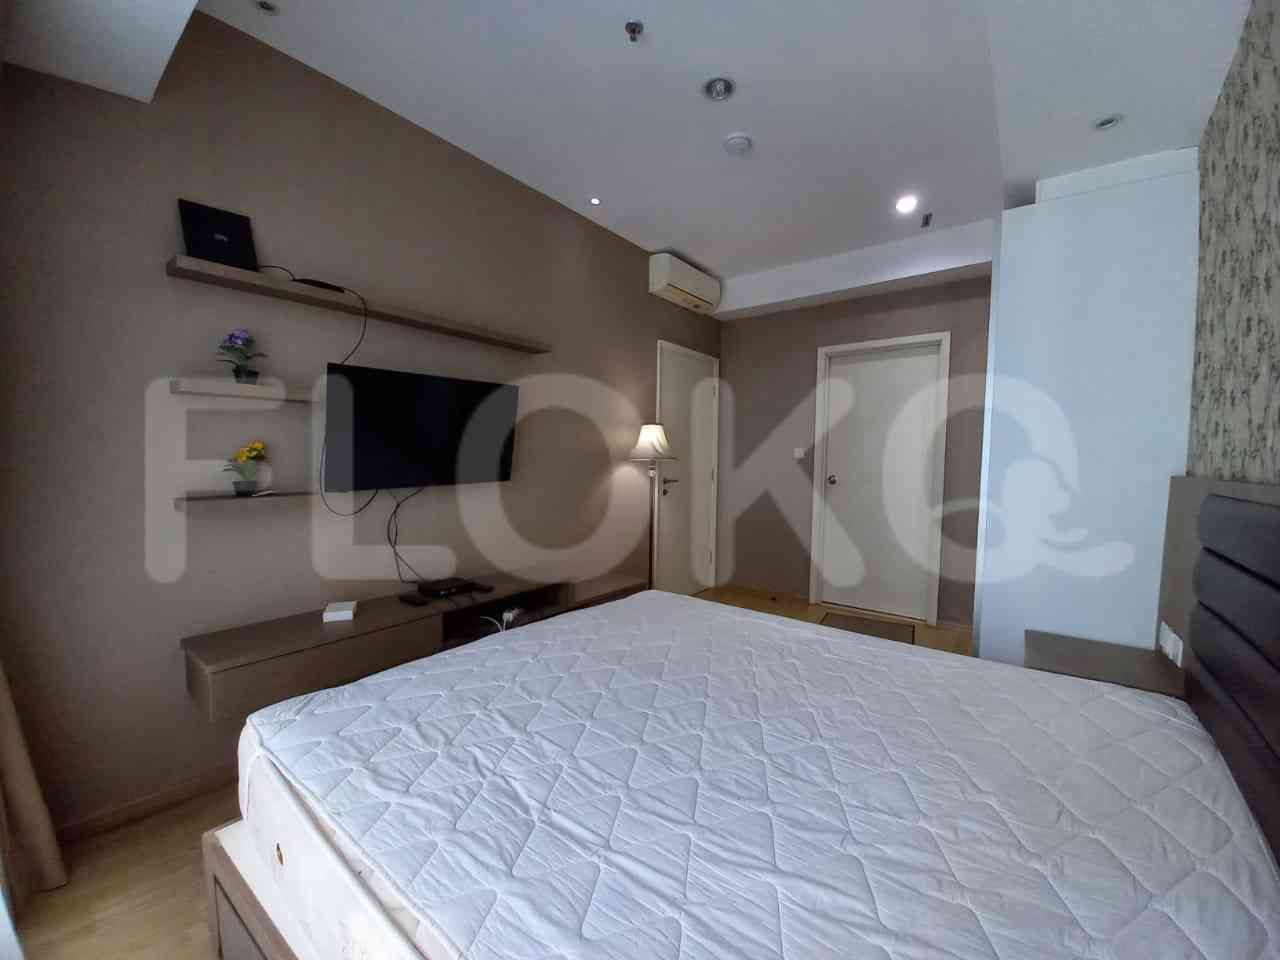 2 Bedroom on 80th Floor for Rent in Casa Grande - fte0ce 3